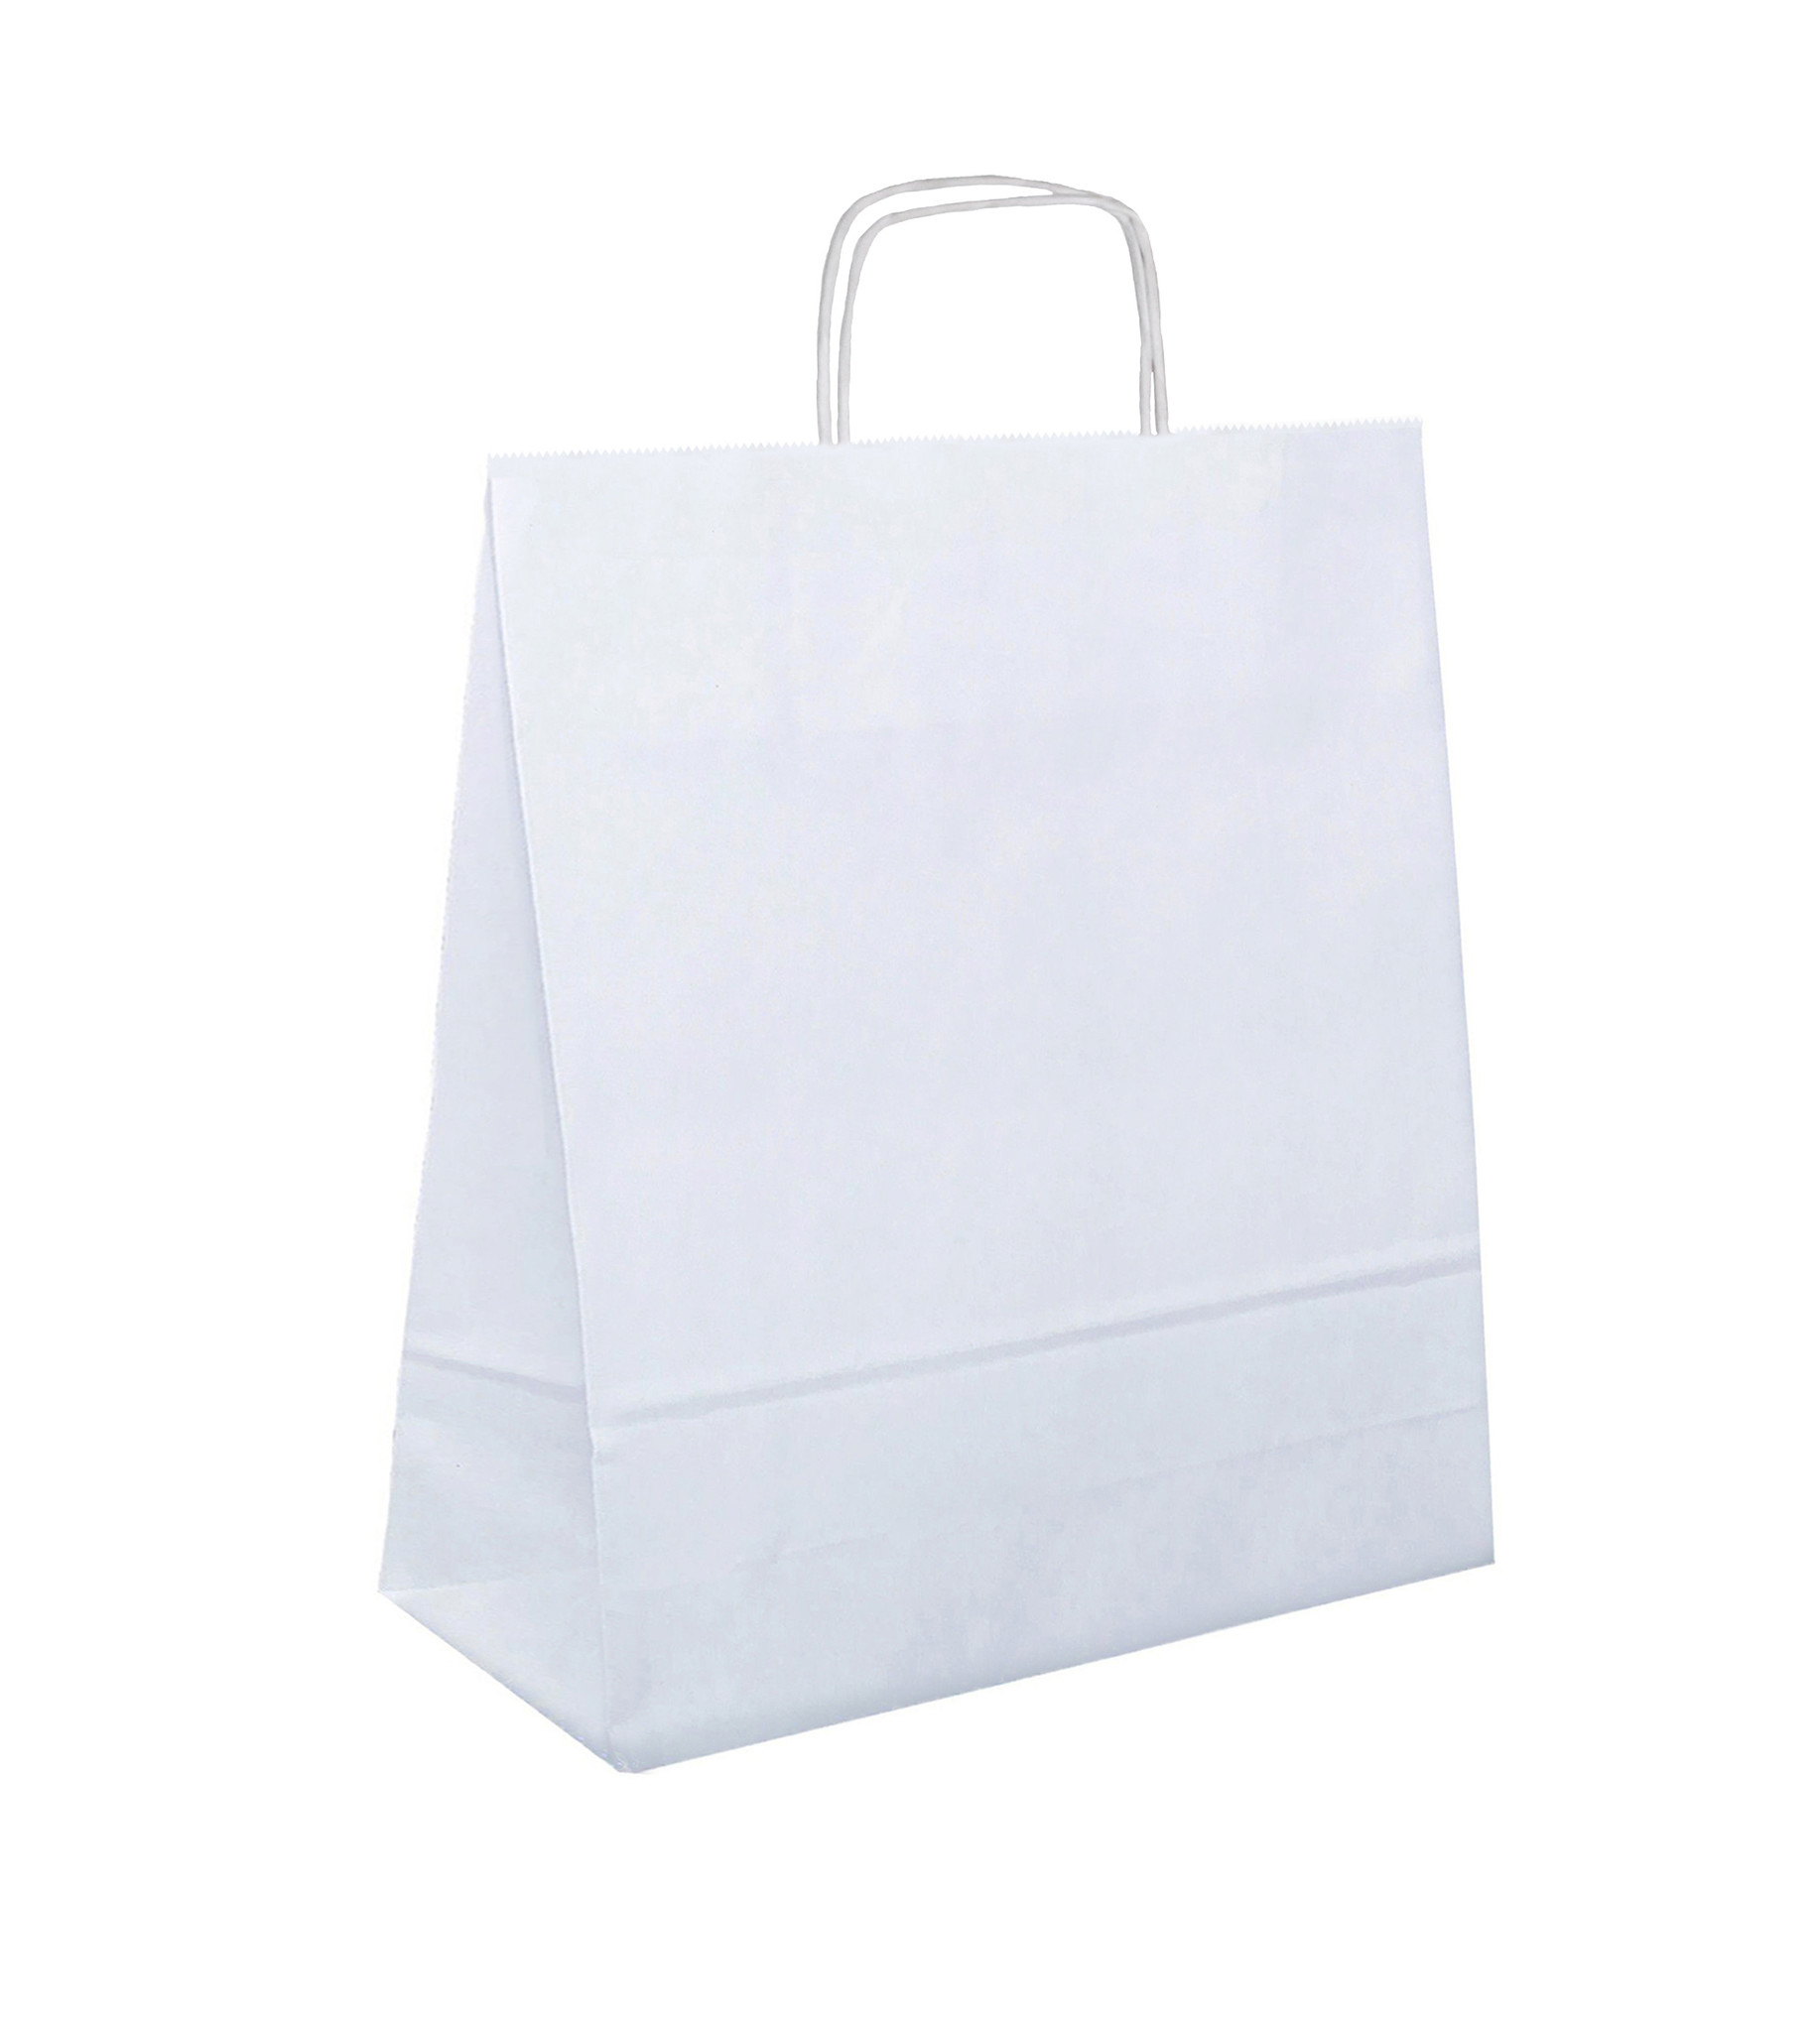 kogel Kwelling Spelen met Witte papieren tasjes kopen? Binnen 24 uur geleverd - VerpakkingenXL